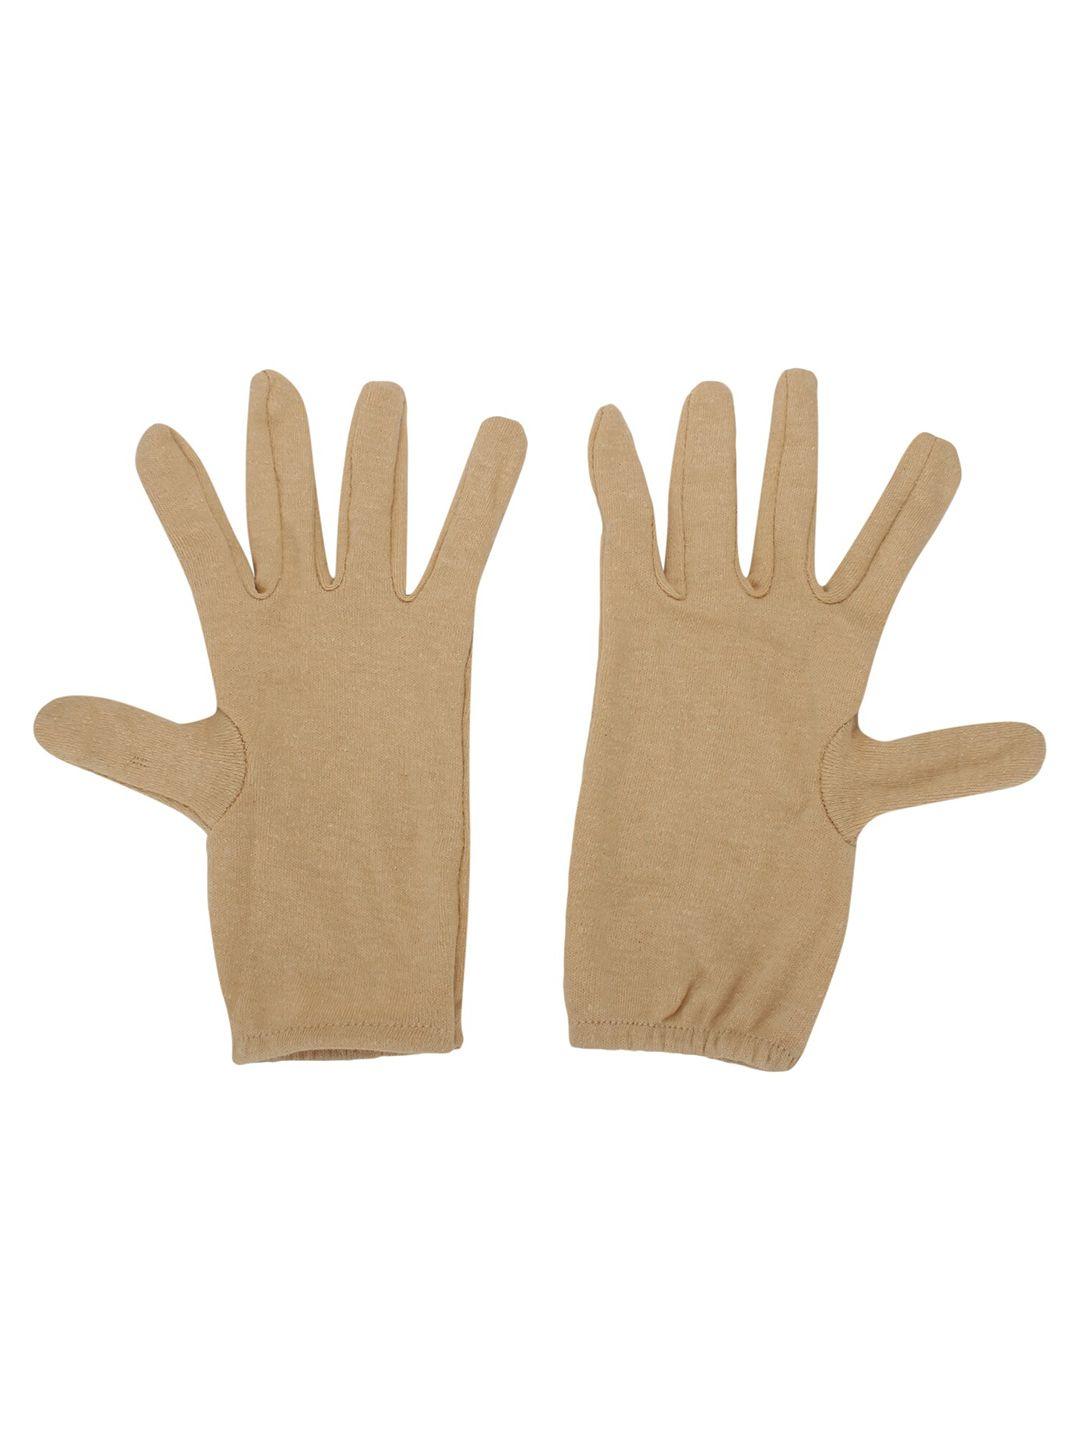 teemoods cotton biking hand gloves